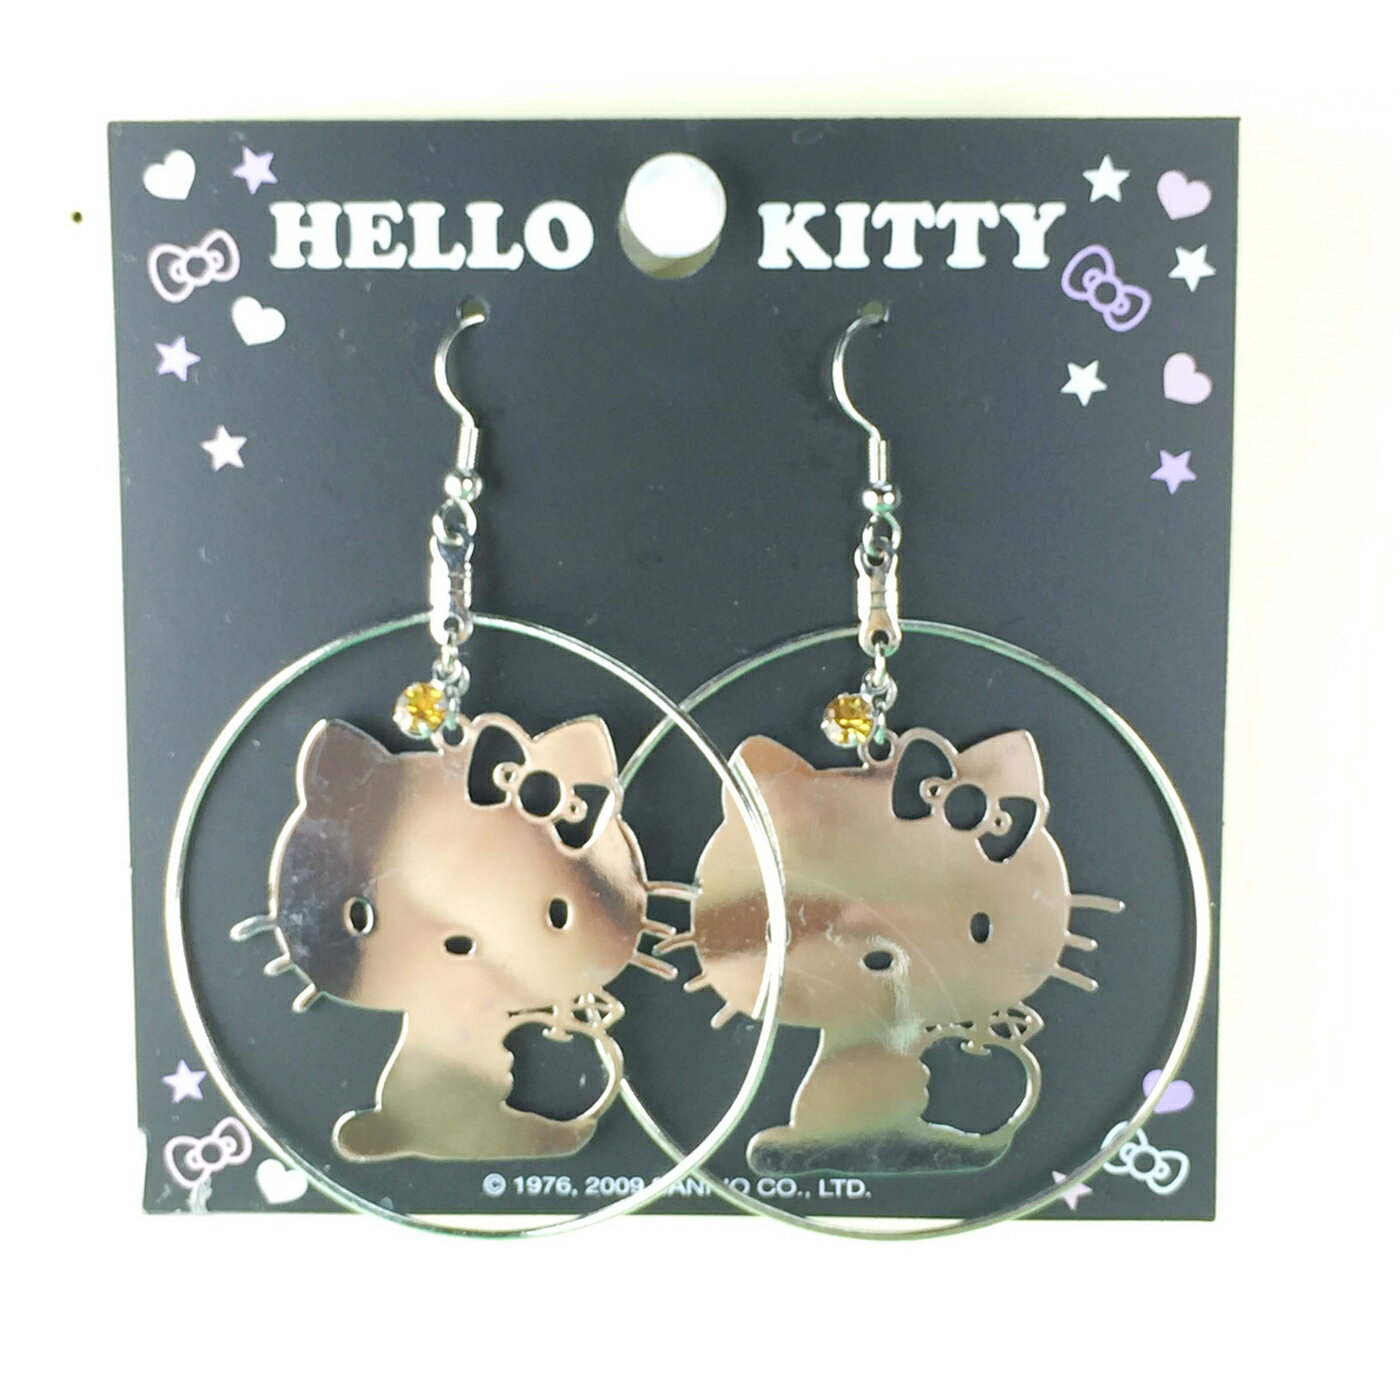 【震撼精品百貨】Hello Kitty 凱蒂貓 造型耳環-側坐圓圈造型 震撼日式精品百貨